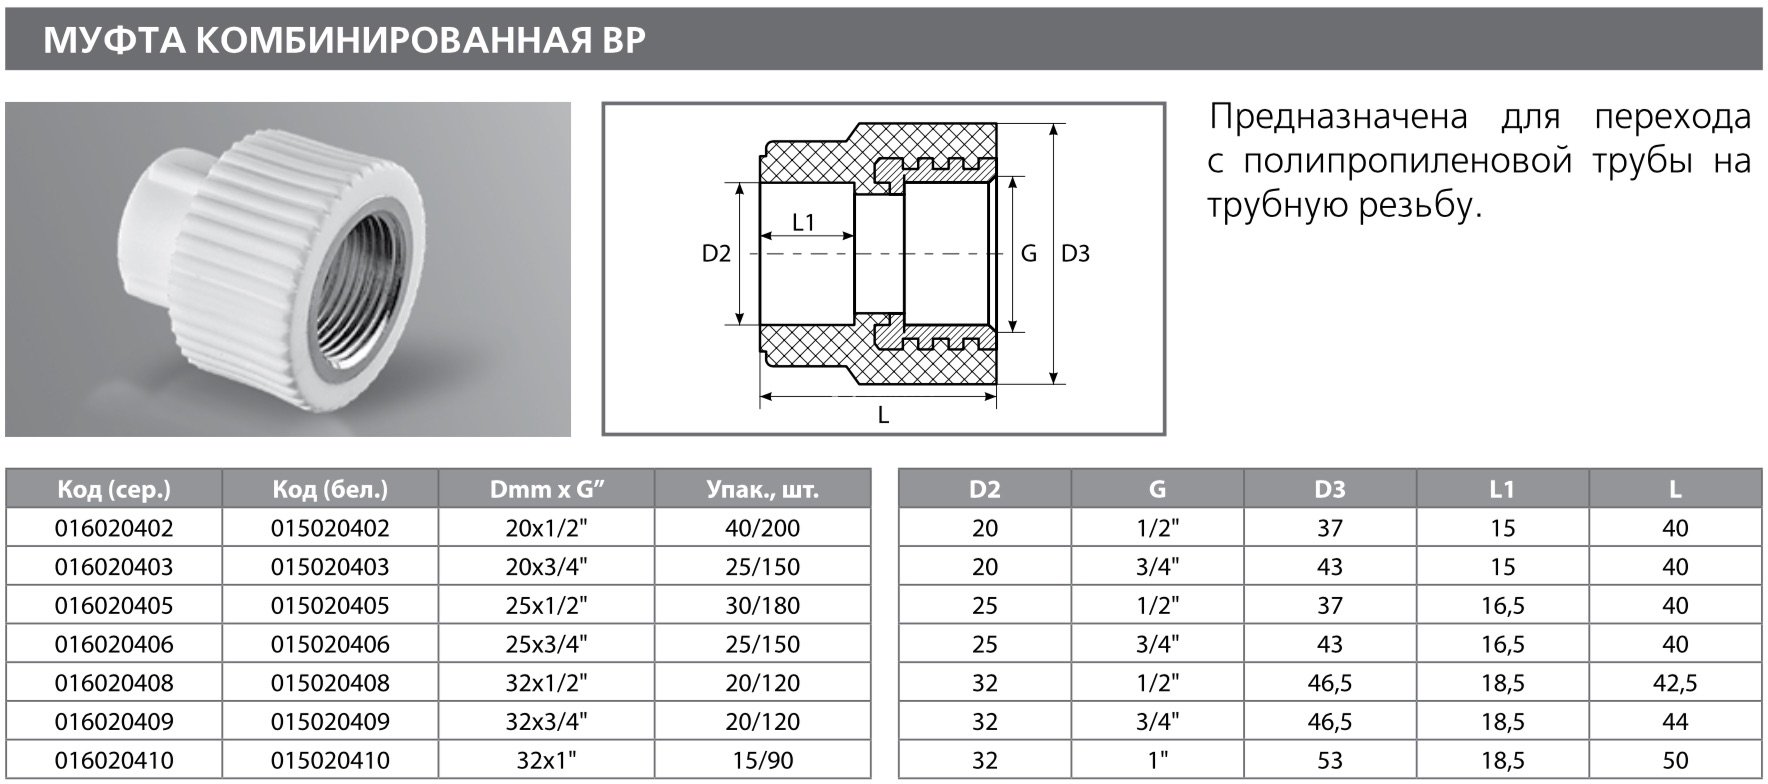 Технические характеристики полипропиленовой трубы pp